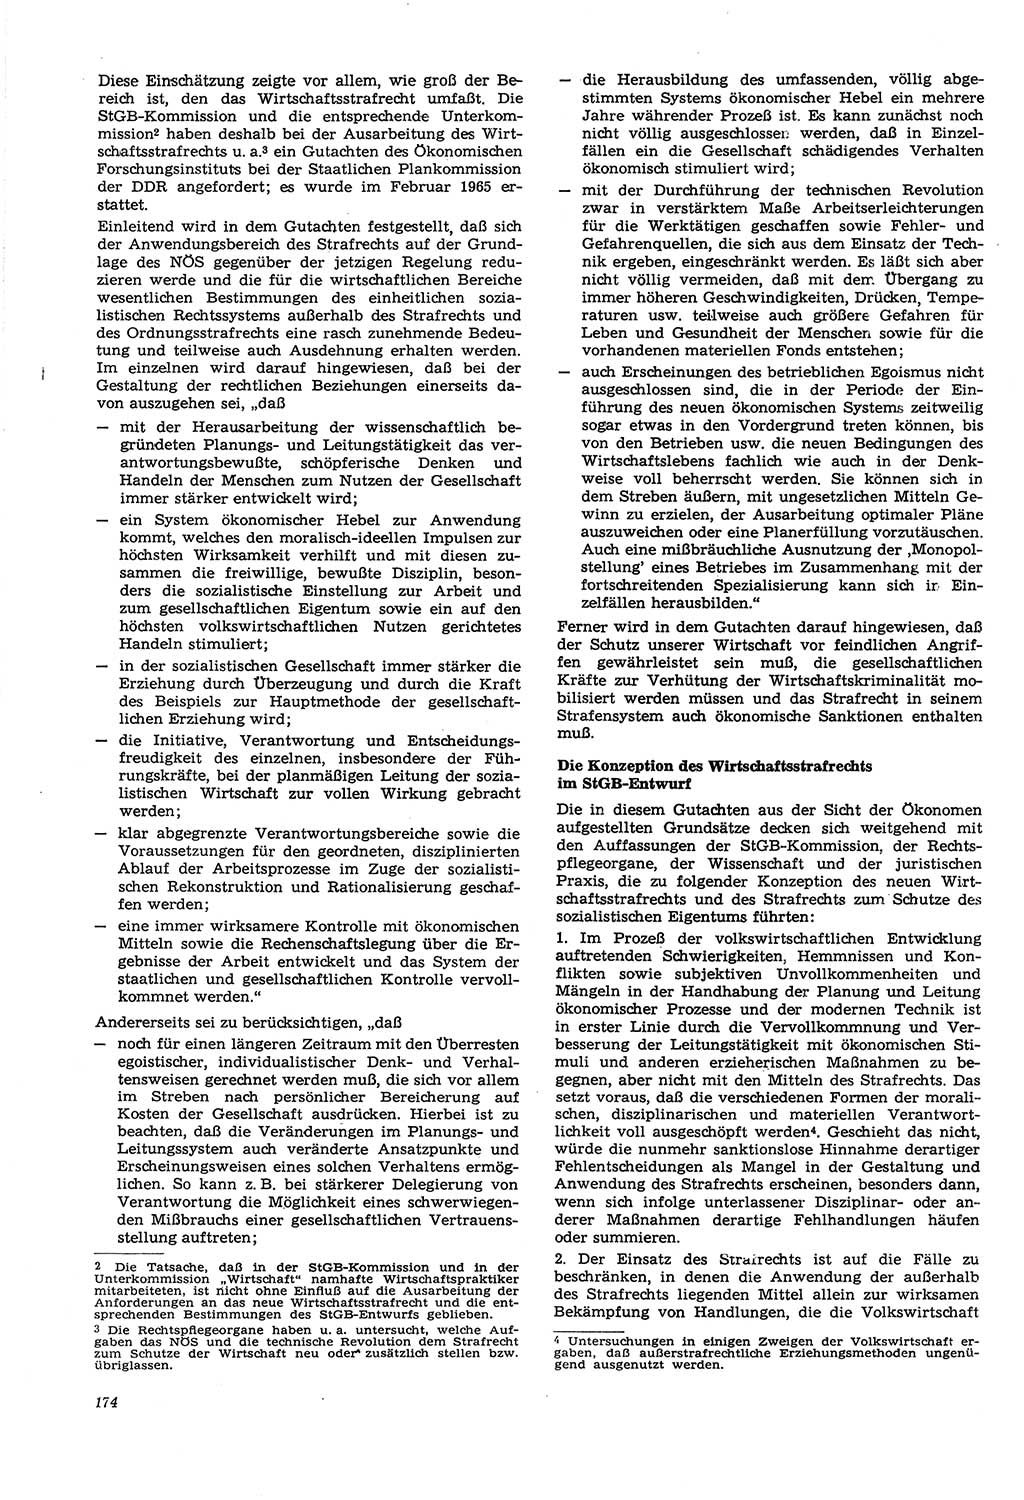 Neue Justiz (NJ), Zeitschrift für Recht und Rechtswissenschaft [Deutsche Demokratische Republik (DDR)], 21. Jahrgang 1967, Seite 174 (NJ DDR 1967, S. 174)